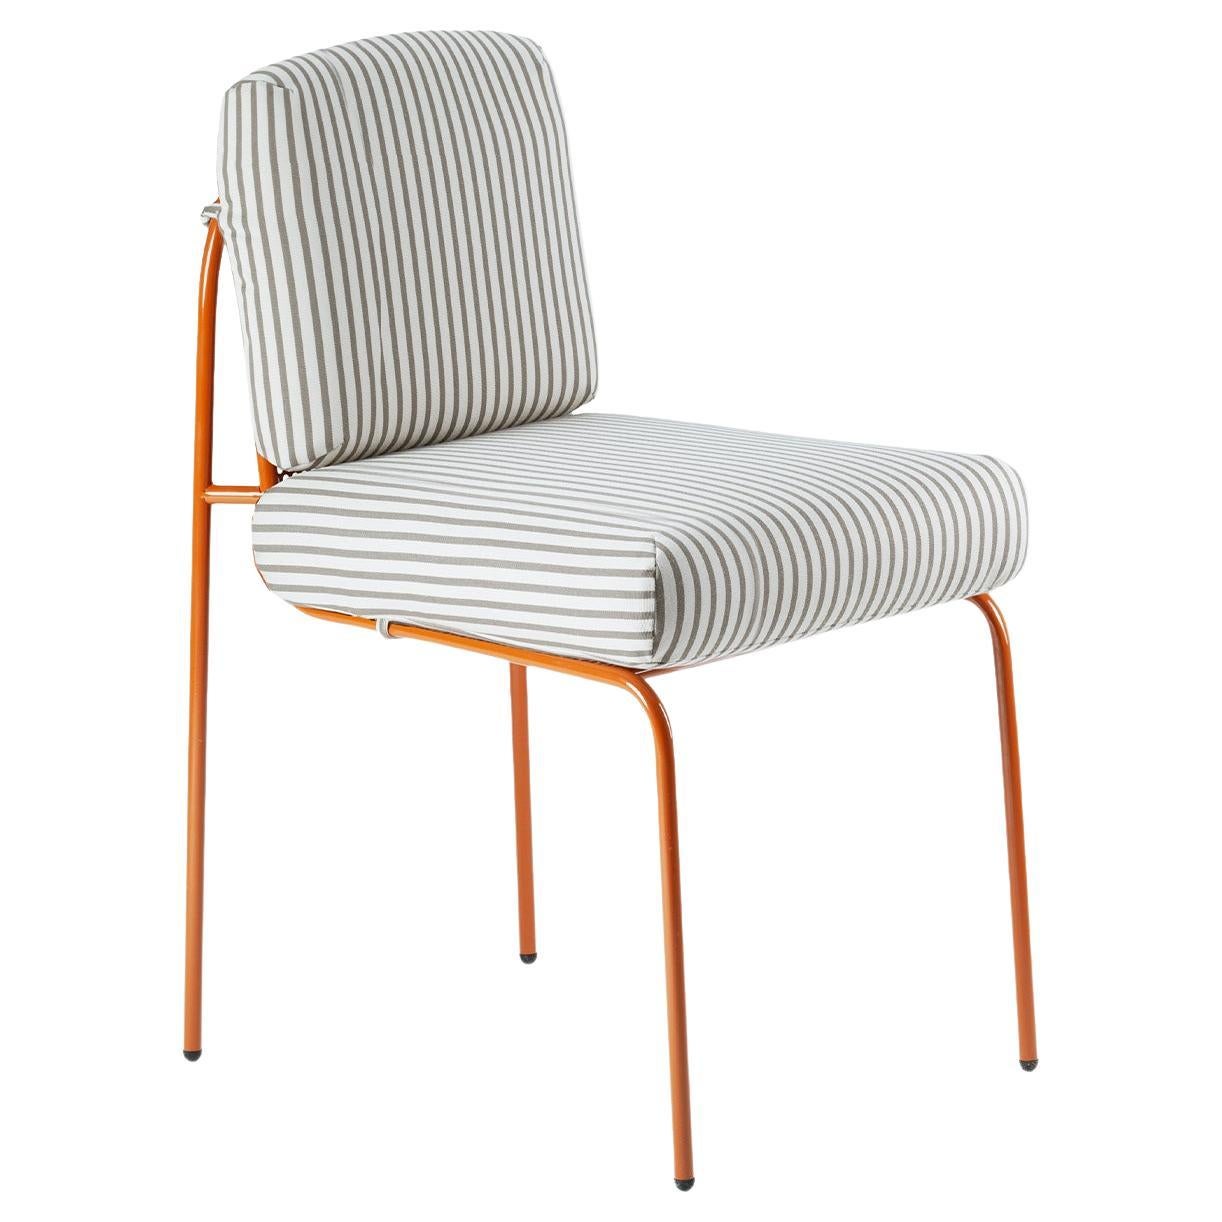 Contemporary Riviera Chair aus lackiertem lachsfarbenem Metall für den Außenbereich